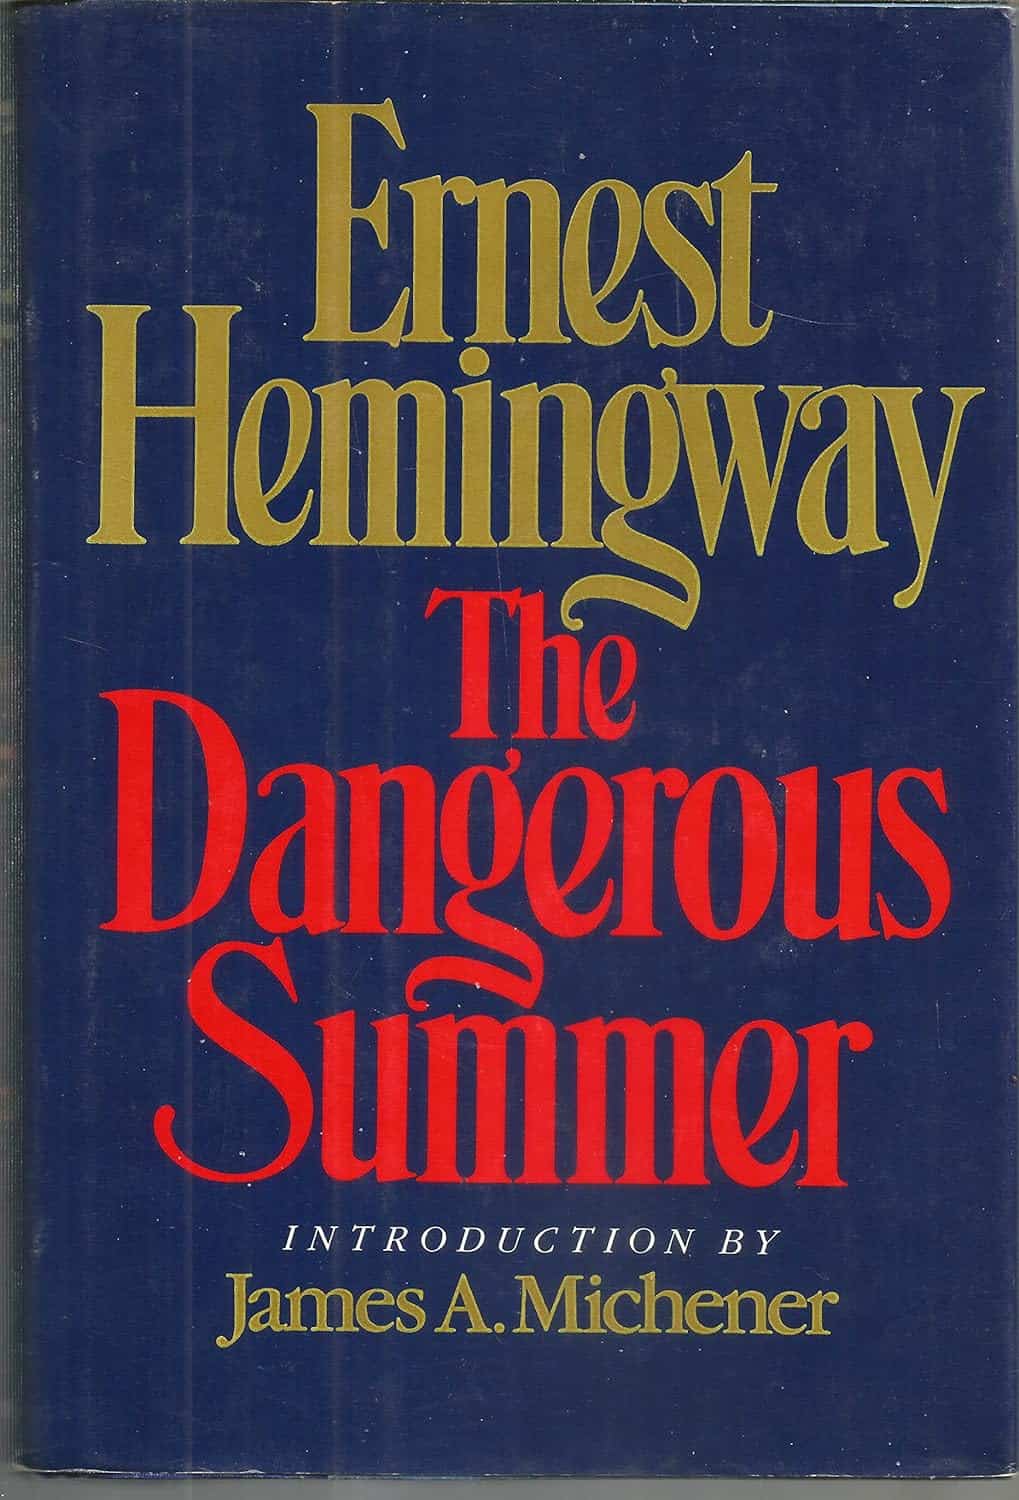 The Dangerous Summer (1985)